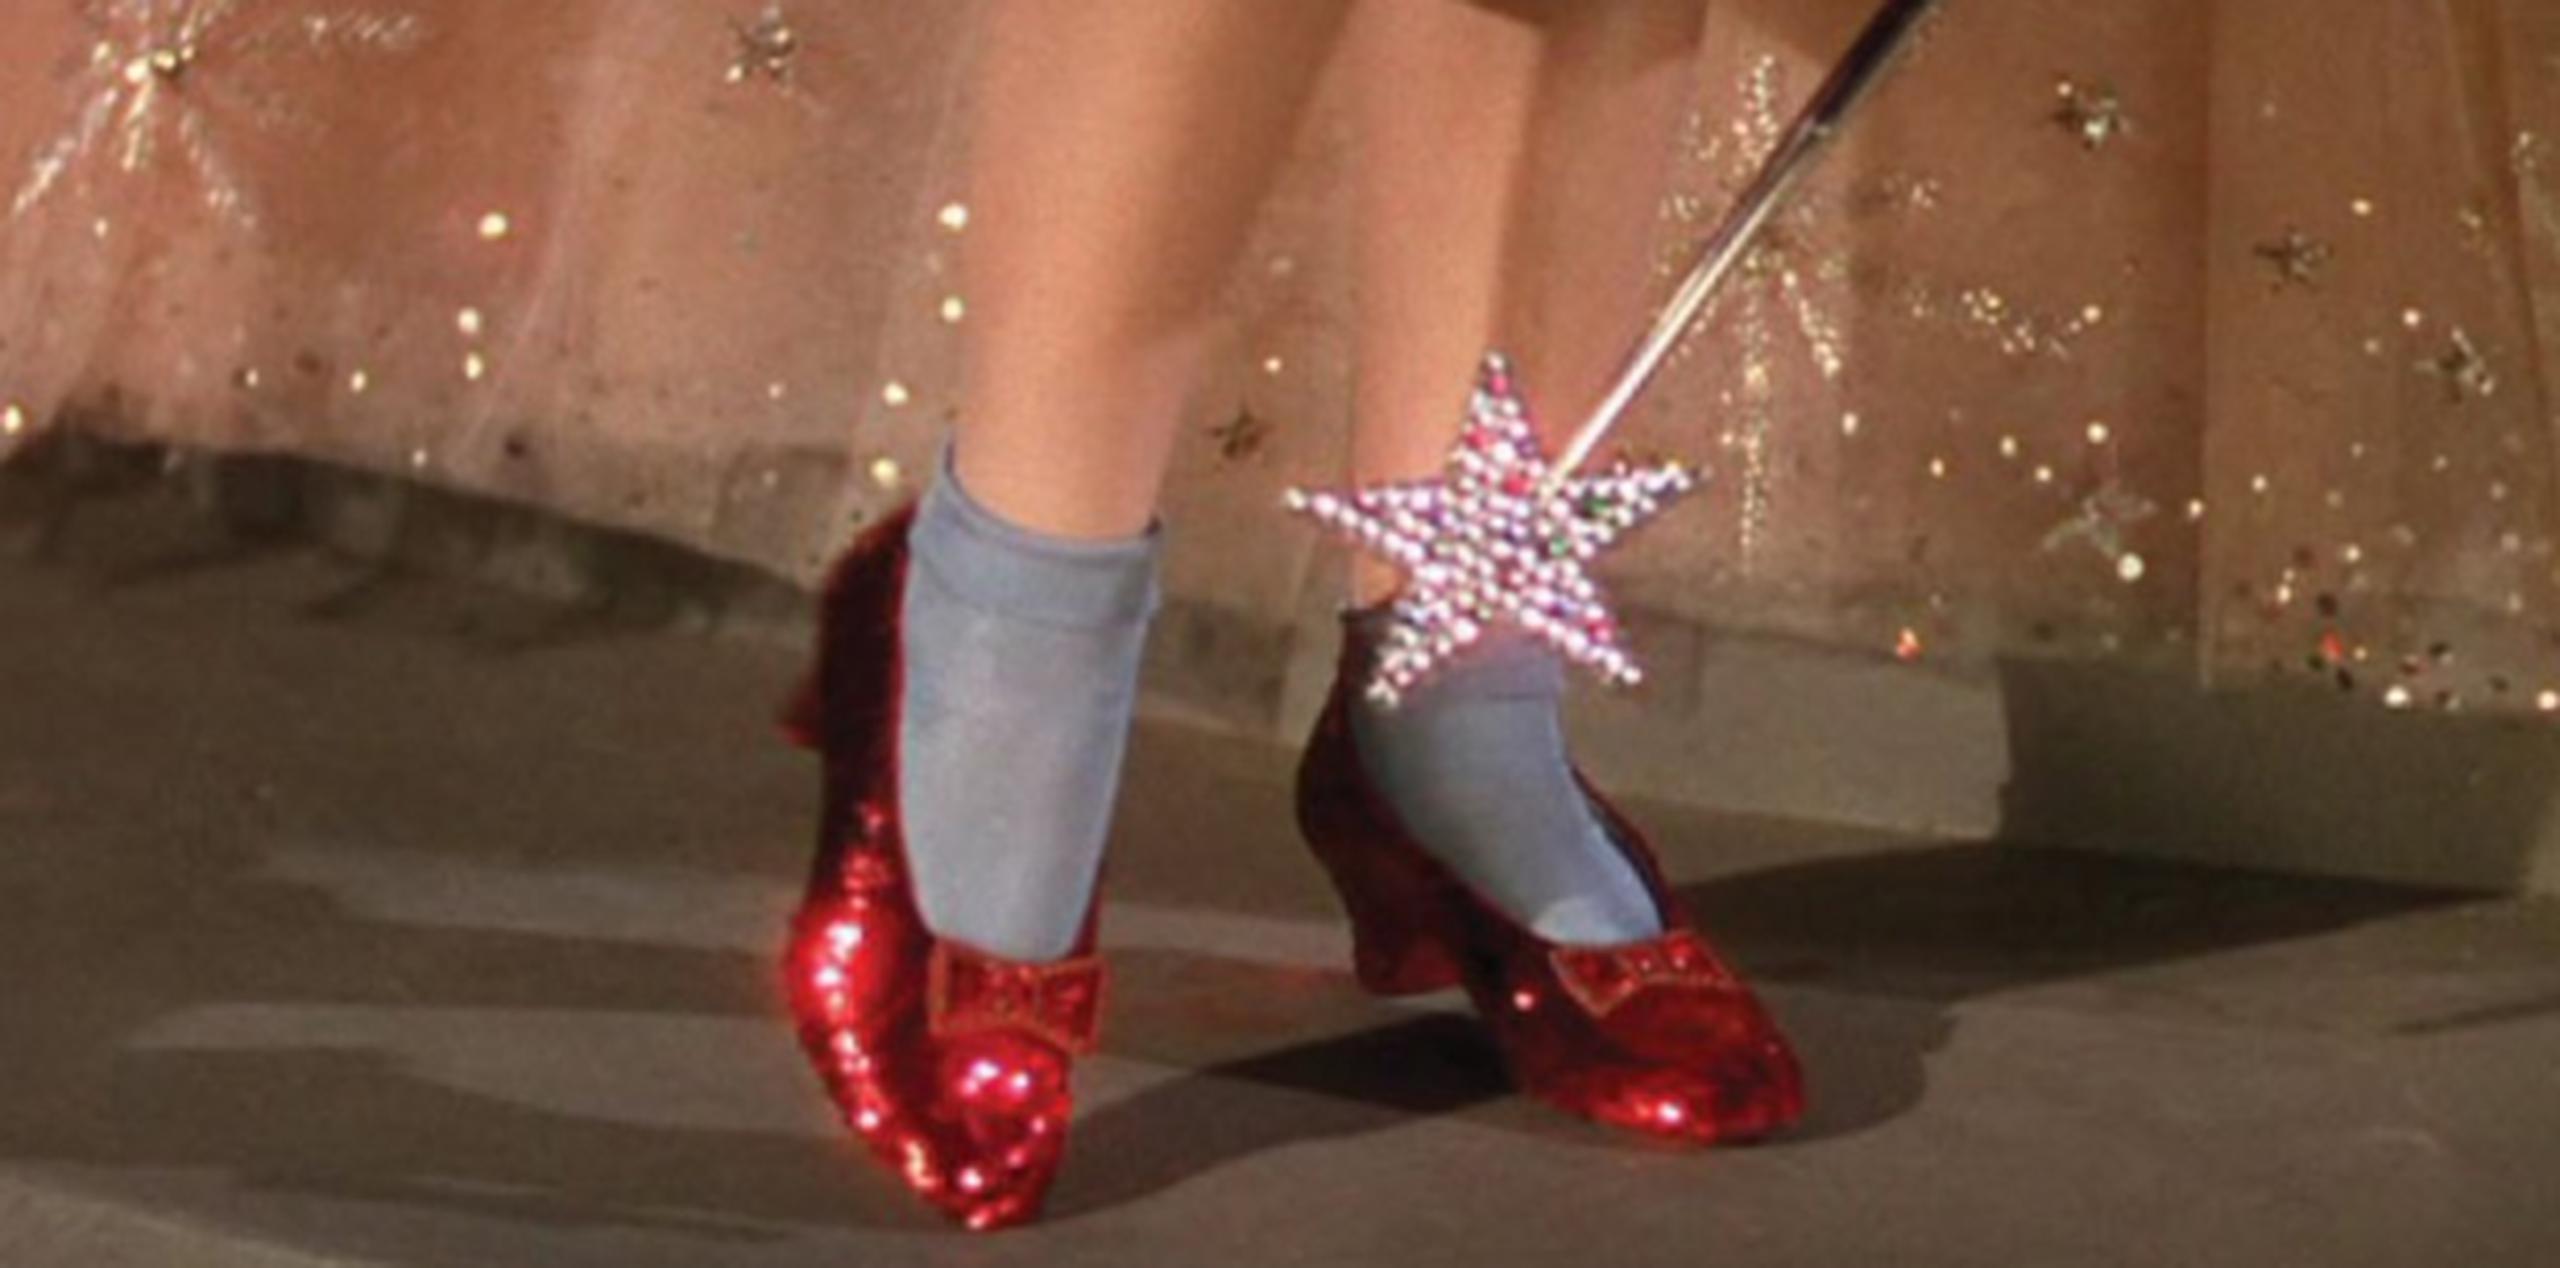 Los zapatos cubiertos de lentejuelas, fabricados hace casi 80 años por el departamento de accesorios de los estudios MGM, se han vuelto frágiles con el paso del tiempo. (Foto/Archivo)